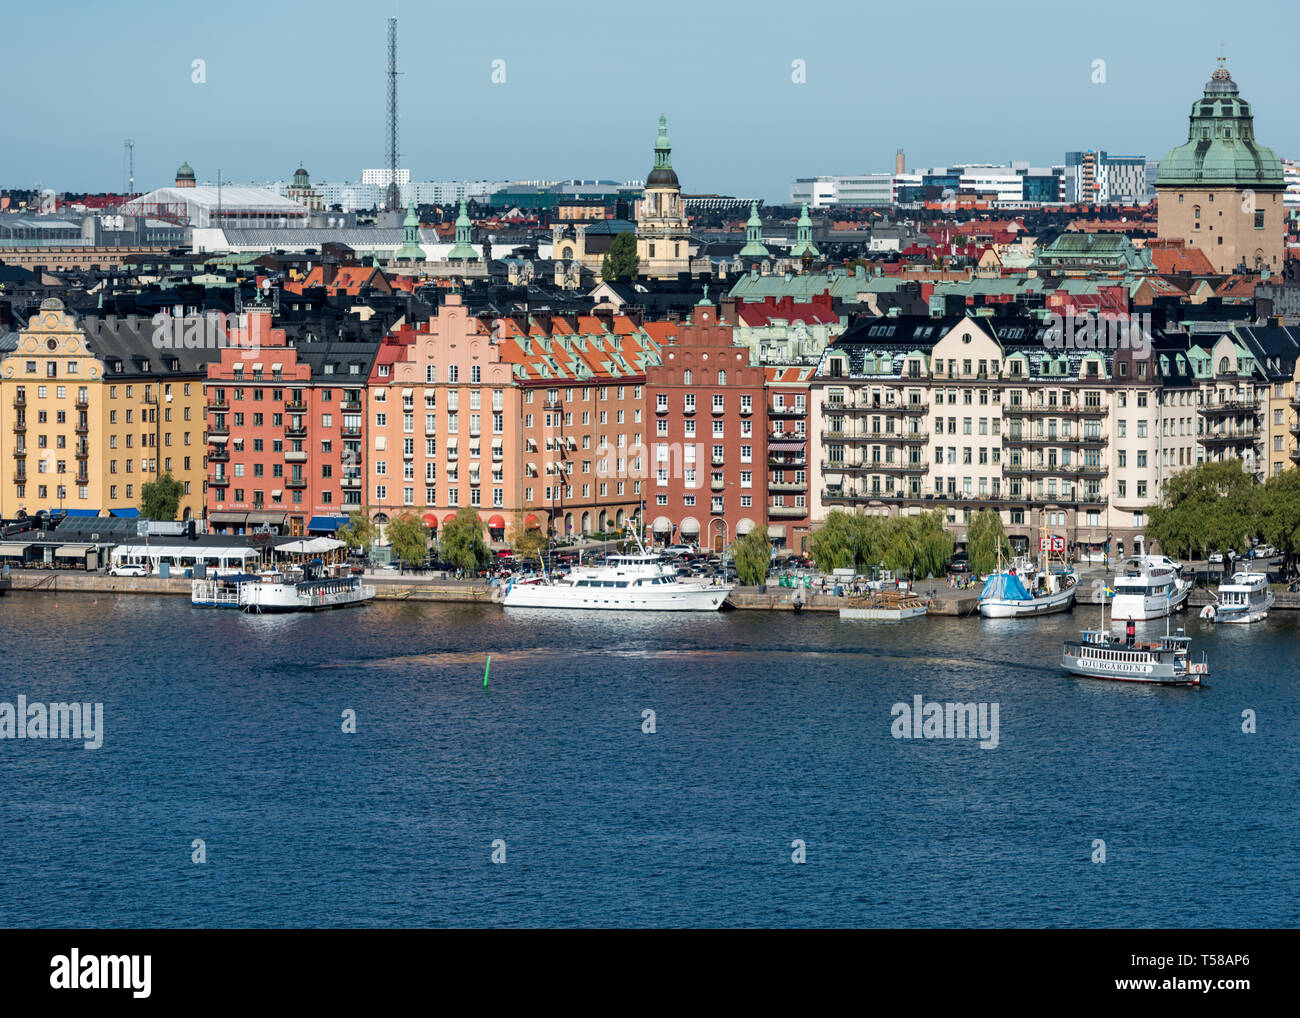 La colorata histroric edifici di Norr Mälarstrand affacciato su traghetti e imbarcazioni ormeggiate sul lago Mälaren. Foto Stock